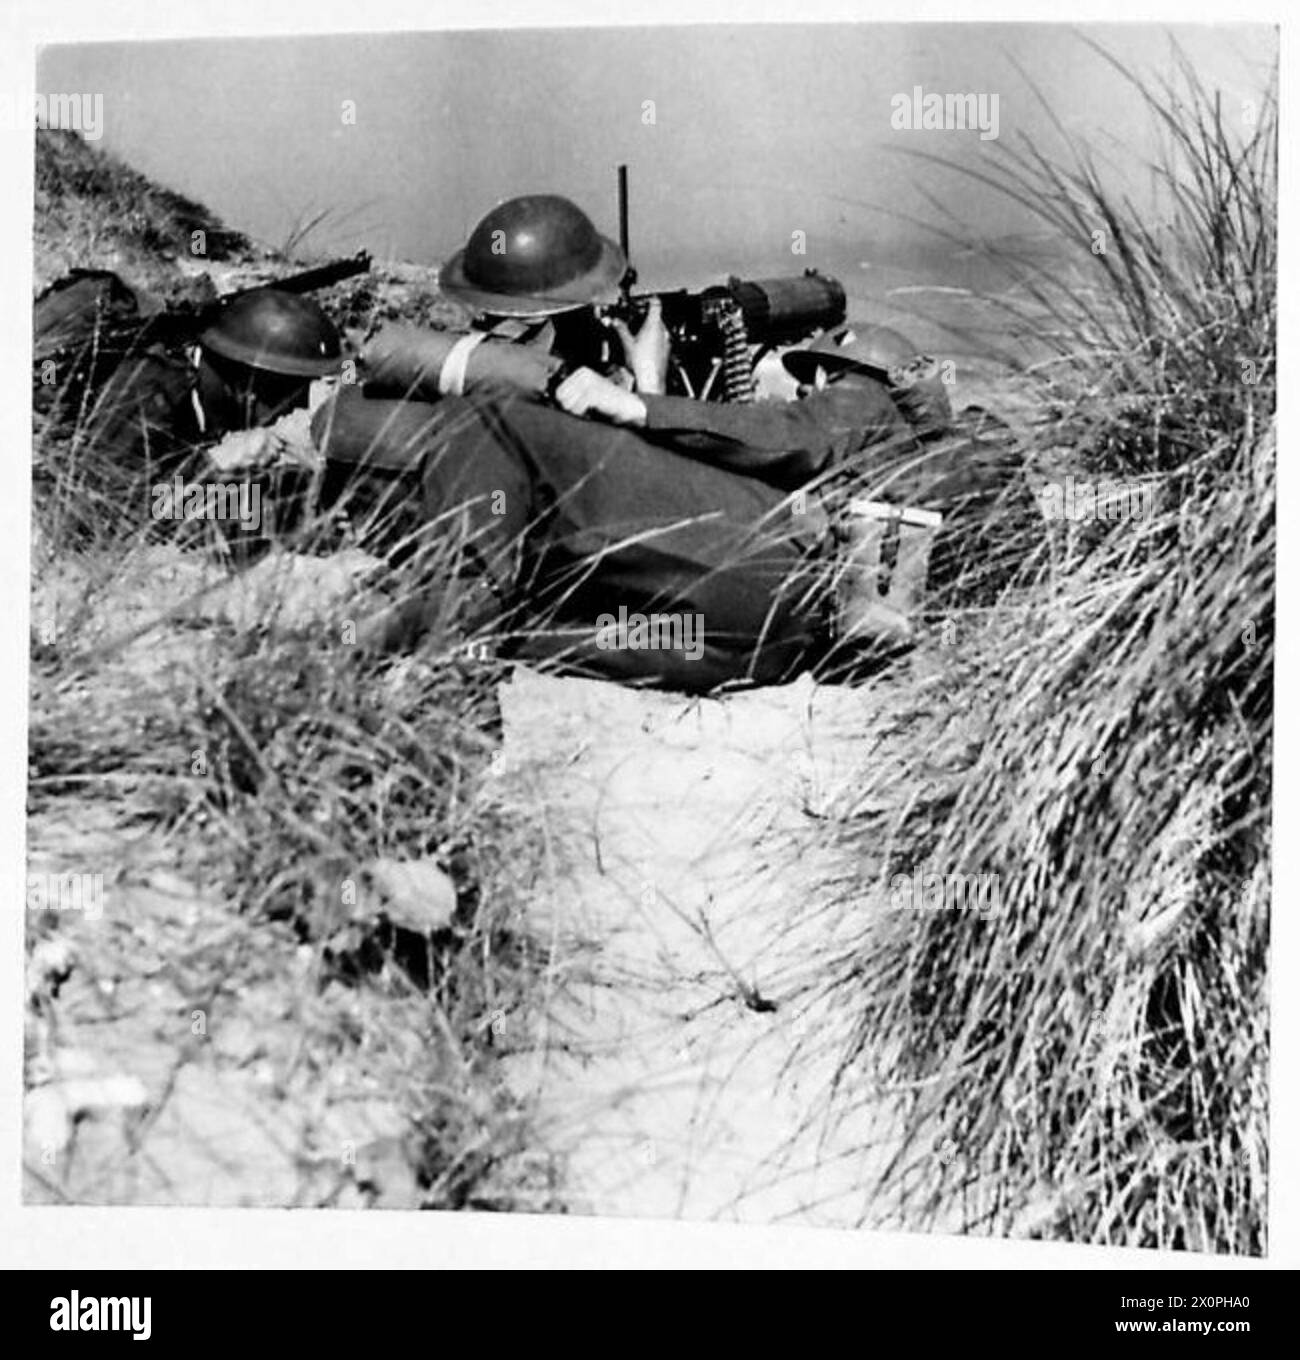 ENTRAÎNEMENT AUX MITRAILLEUSES - Un poste de mitrailleuse dans l'herbe rugueuse des dunes de sable sur la côte nord-irlandaise. Négatif photographique, Armée britannique Banque D'Images